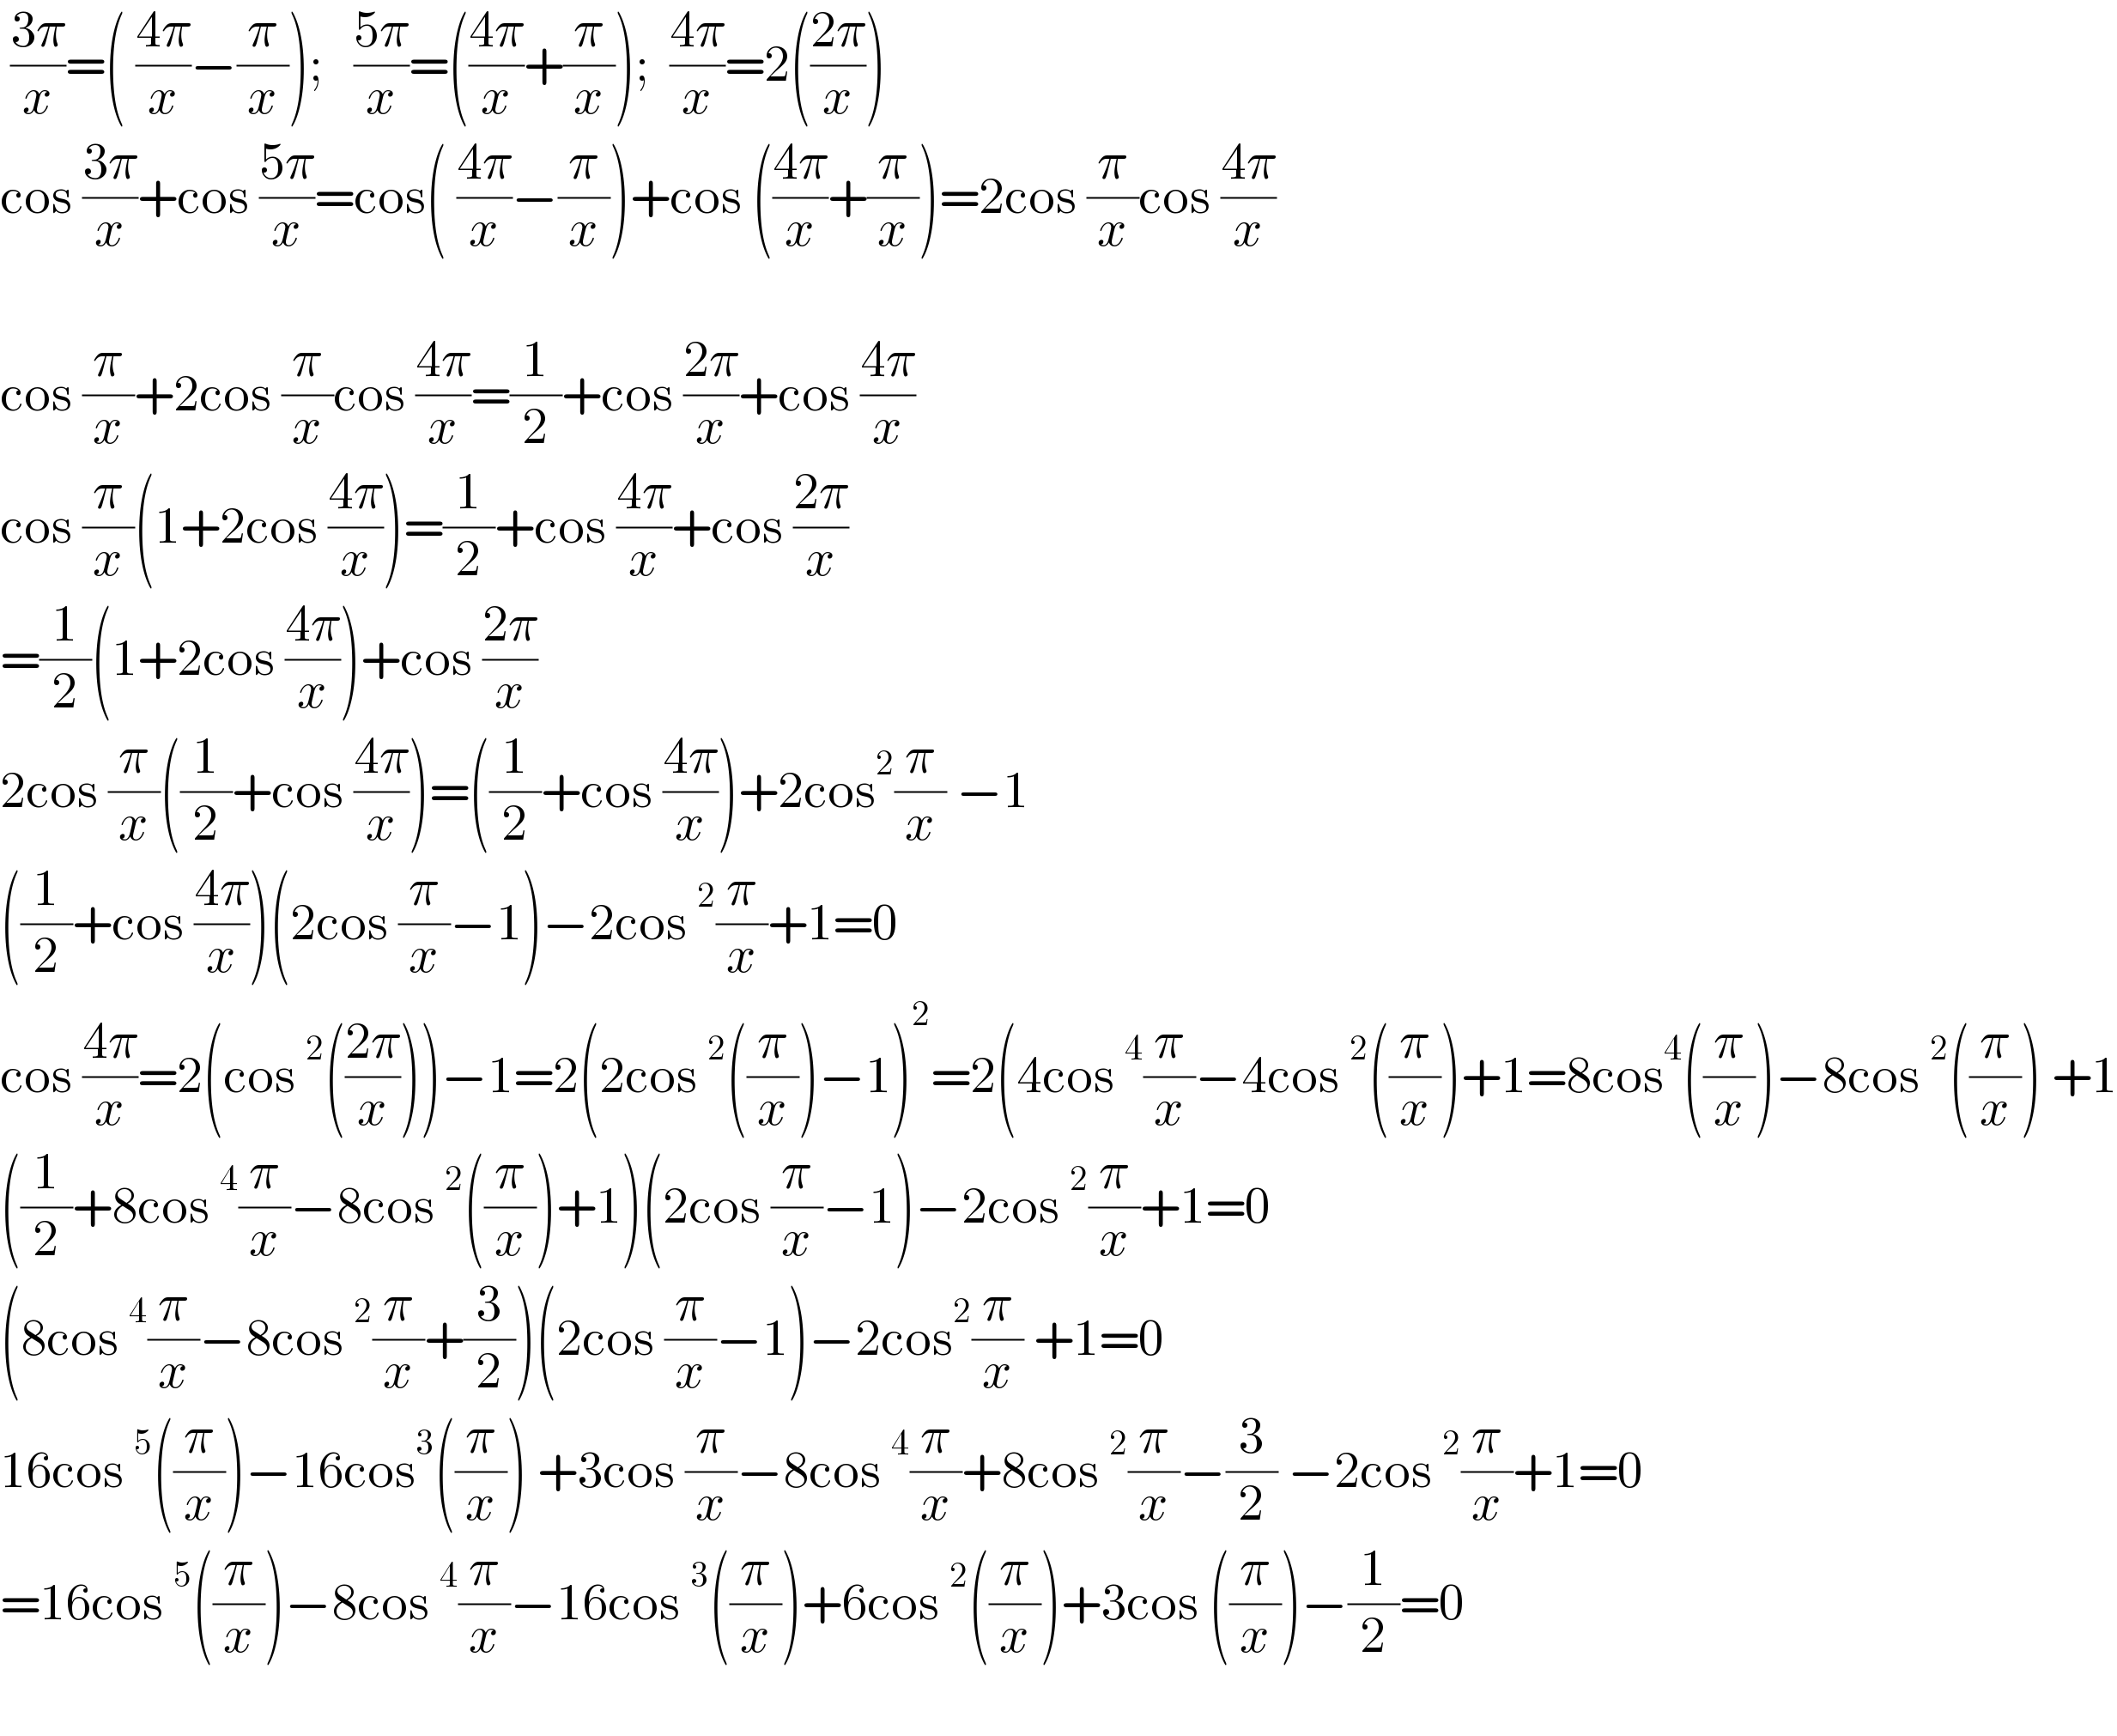  ((3π)/x)=( ((4π)/x)−(π/x));   ((5π)/x)=(((4π)/x)+(π/x));  ((4π)/x)=2(((2π)/x))     cos ((3π)/x)+cos ((5π)/x)=cos( ((4π)/x)−(π/x))+cos (((4π)/x)+(π/x))=2cos (π/x)cos ((4π)/x)    cos (π/x)+2cos (π/x)cos ((4π)/x)=(1/2)+cos ((2π)/x)+cos ((4π)/x)  cos (π/x)(1+2cos ((4π)/x))=(1/2)+cos ((4π)/x)+cos ((2π)/x)  =(1/2)(1+2cos ((4π)/x))+cos ((2π)/x)  2cos (π/x)((1/2)+cos ((4π)/x))=((1/2)+cos ((4π)/x))+2cos^2 (π/x) −1  ((1/2)+cos ((4π)/x))(2cos (π/x)−1)−2cos^2 (π/x)+1=0  cos ((4π)/x)=2(cos^2 (((2π)/x)))−1=2(2cos^2 ((π/x))−1)^2 =2(4cos^4 (π/x)−4cos^2 ((π/x))+1=8cos^4 ((π/x))−8cos^2 ((π/x)) +1  ((1/2)+8cos^4 (π/x)−8cos^2 ((π/x))+1)(2cos (π/x)−1)−2cos^2 (π/x)+1=0  (8cos^4 (π/x)−8cos^2 (π/x)+(3/2))(2cos (π/x)−1)−2cos^2 (π/x) +1=0  16cos^5 ((π/x))−16cos^3 ((π/x)) +3cos (π/x)−8cos^4 (π/x)+8cos^2 (π/x)−(3/2) −2cos^2 (π/x)+1=0  =16cos^5 ((π/x))−8cos^4 (π/x)−16cos^3 ((π/x))+6cos^2 ((π/x))+3cos ((π/x))−(1/2)=0    